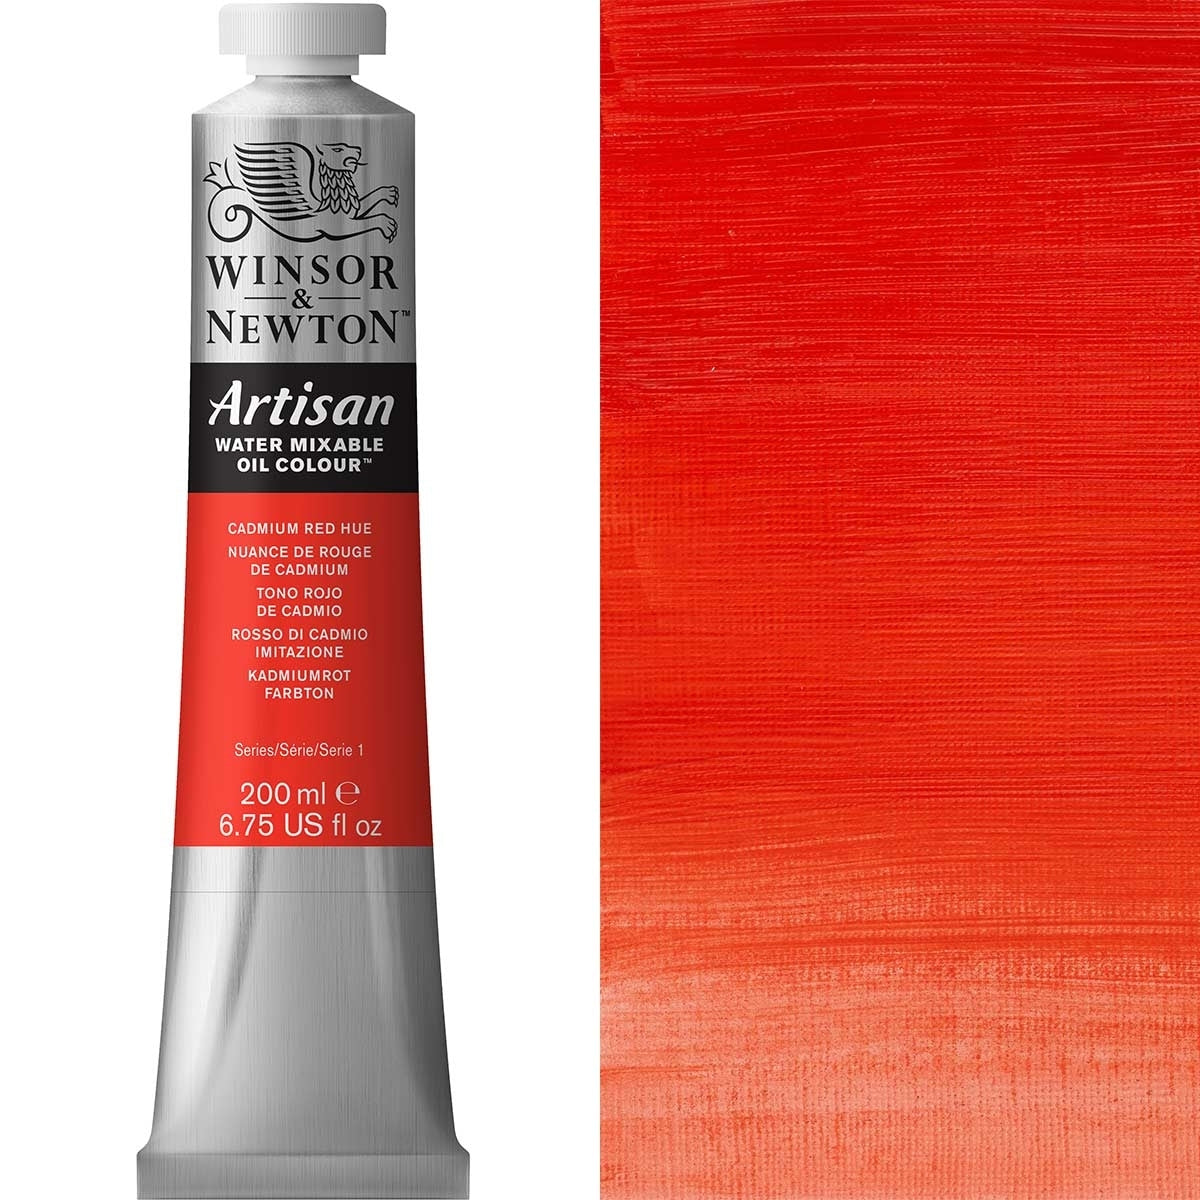 Winsor et Newton - Couleur d'huile artisanale Watermixable - 200 ml - Cadmium Red Hue